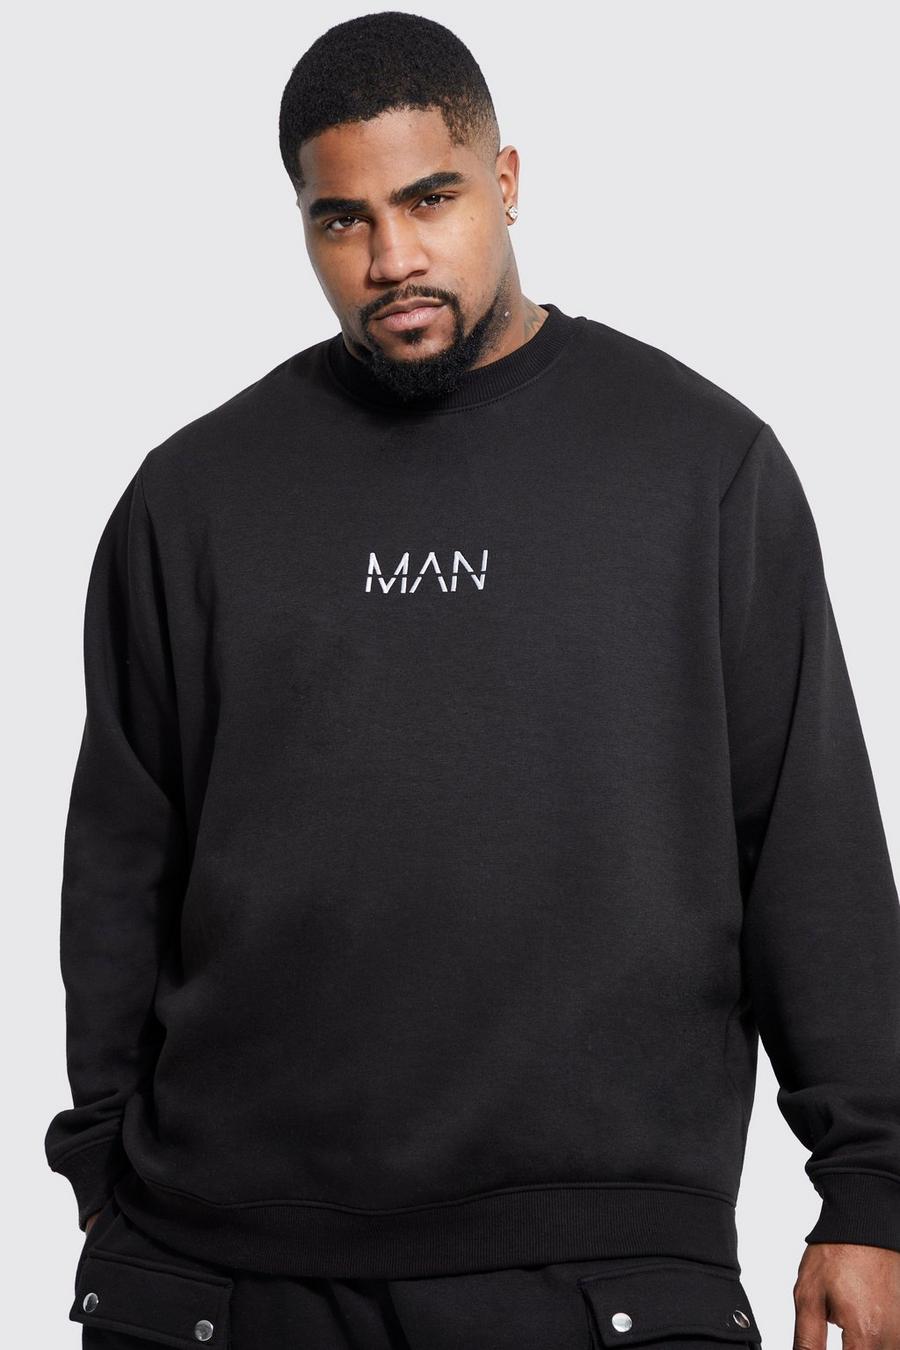 Plus Man Dash Sweatshirt, Black schwarz